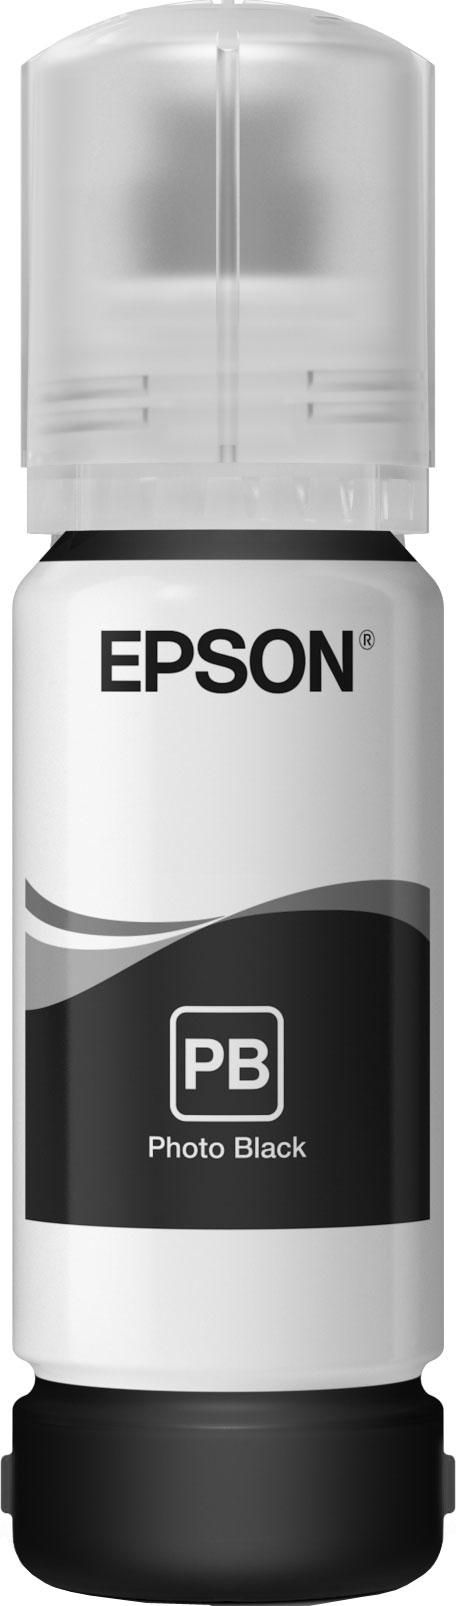 Epson 106 EcoTank Photo Black ink bottle - W124346642